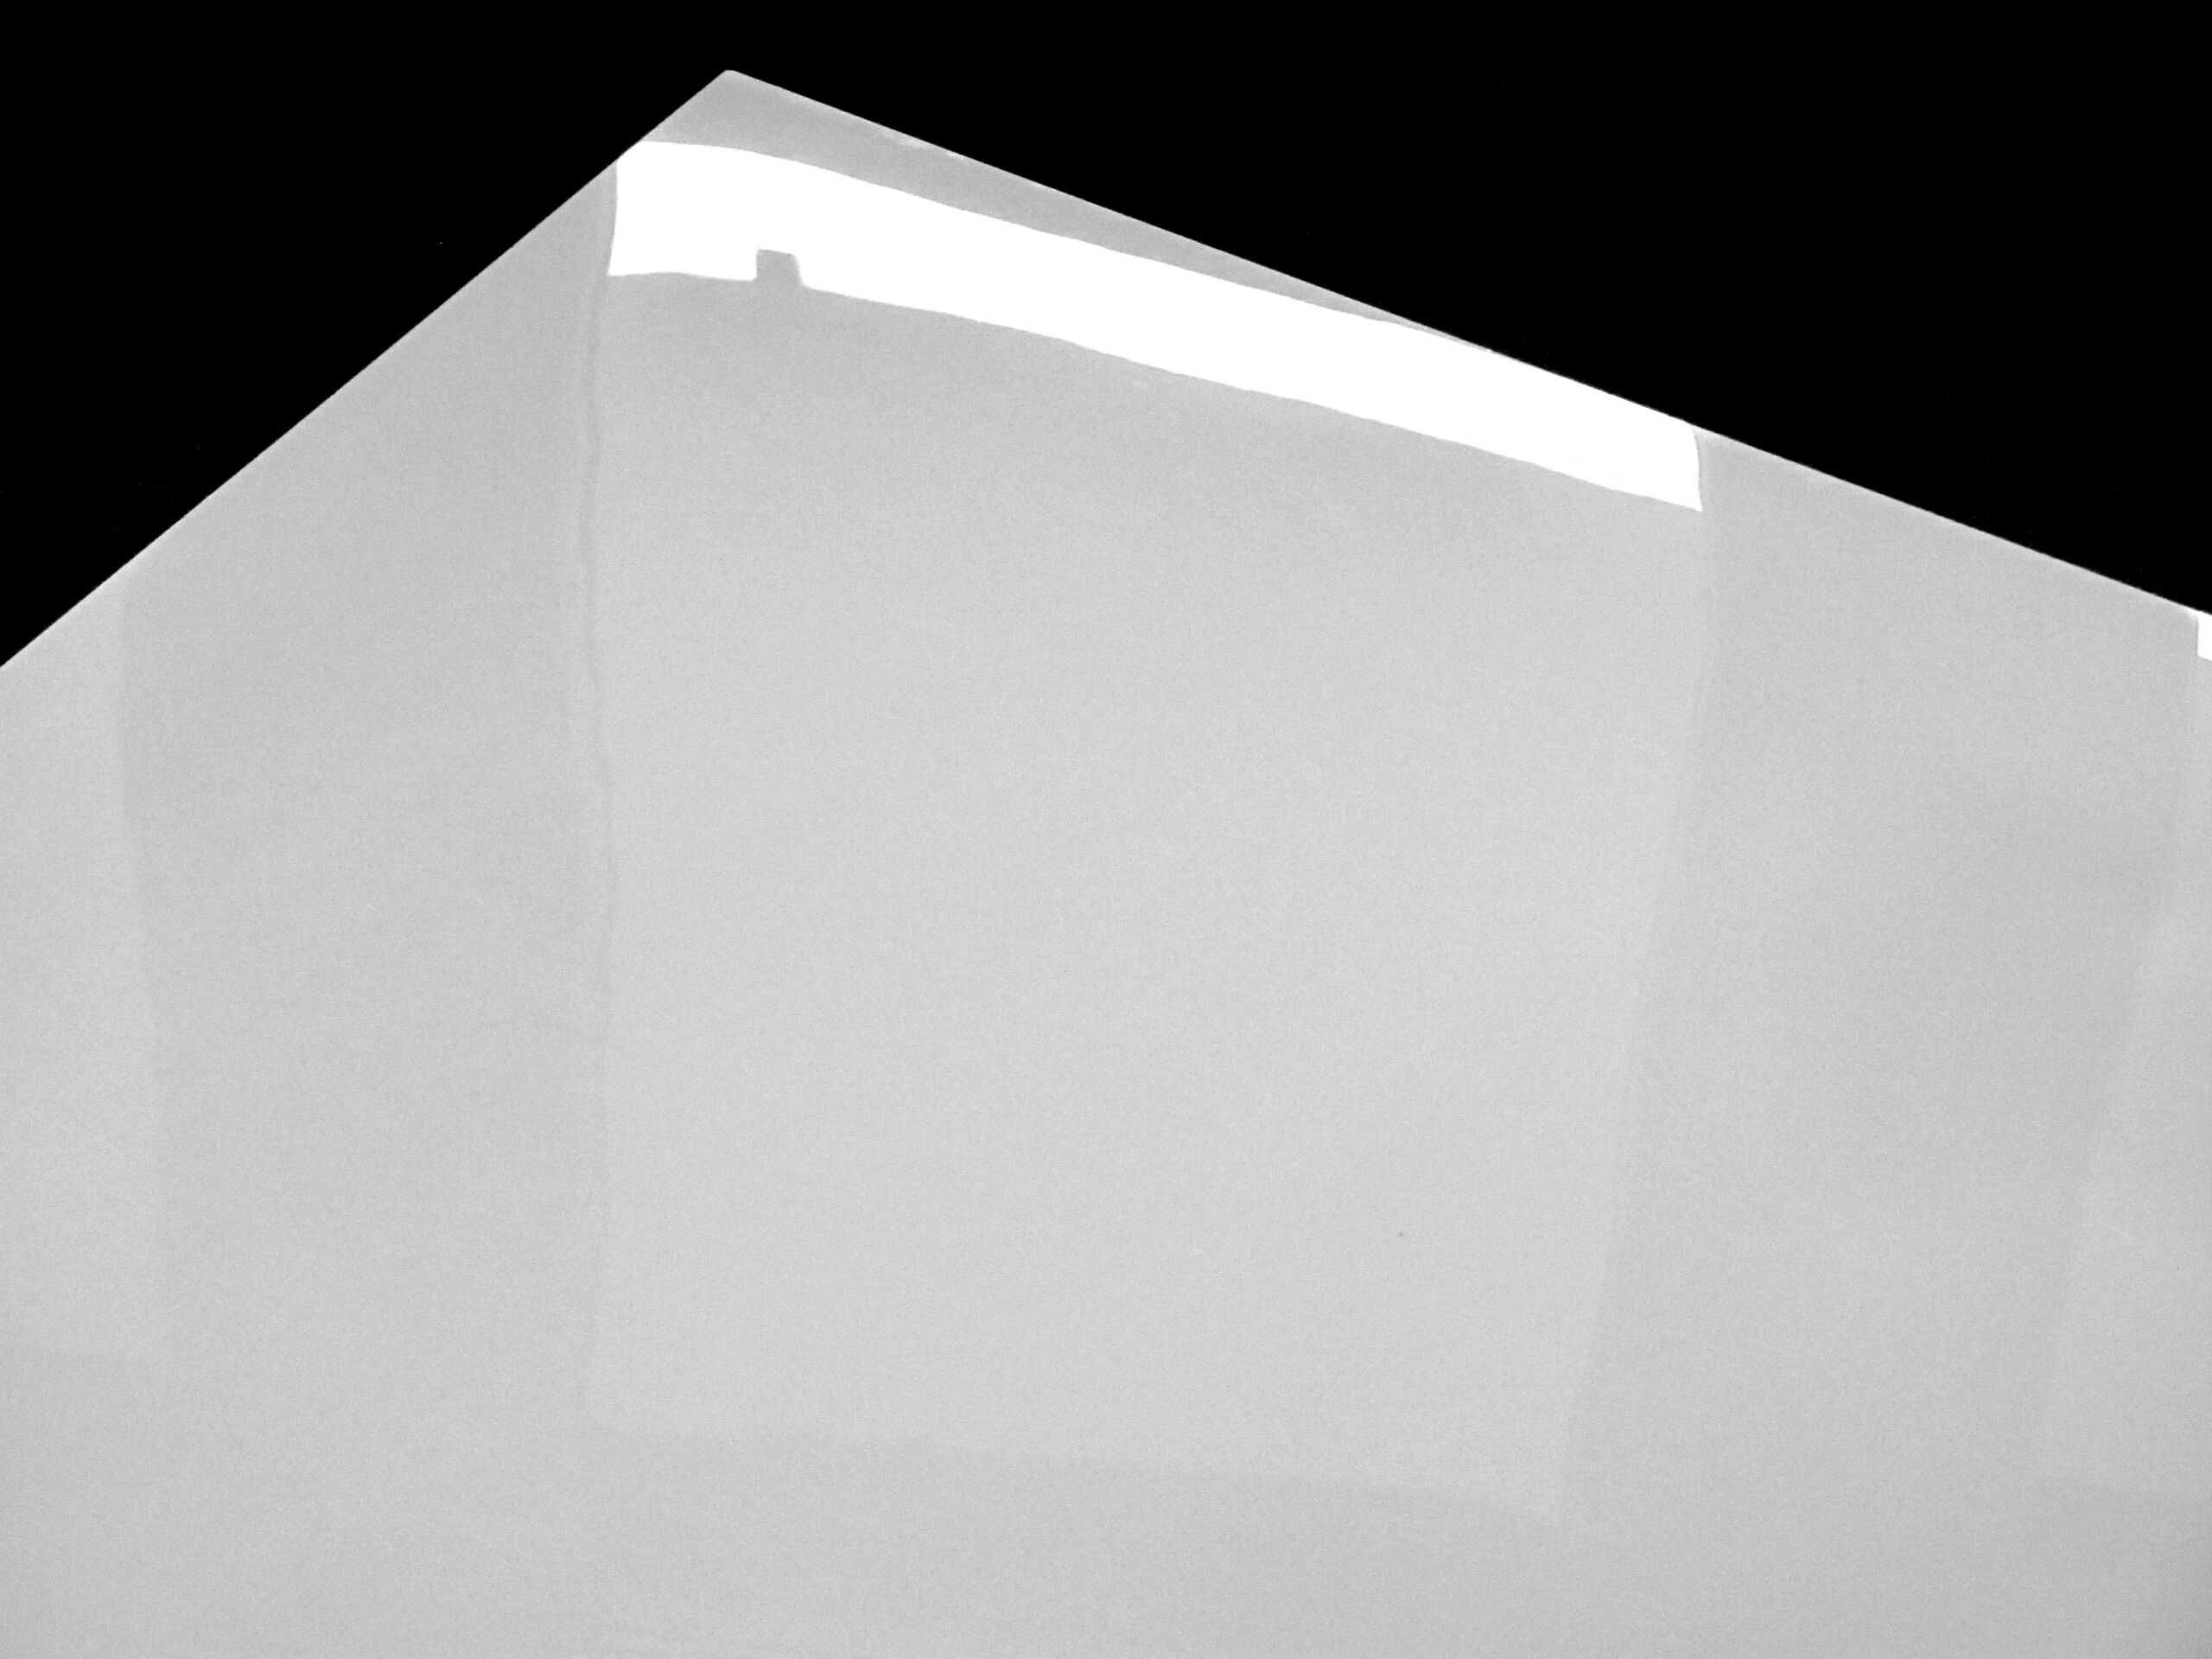 Płytka Gres Super Biała 60x60 Polerowana rektyfikowana podłoga, ściana